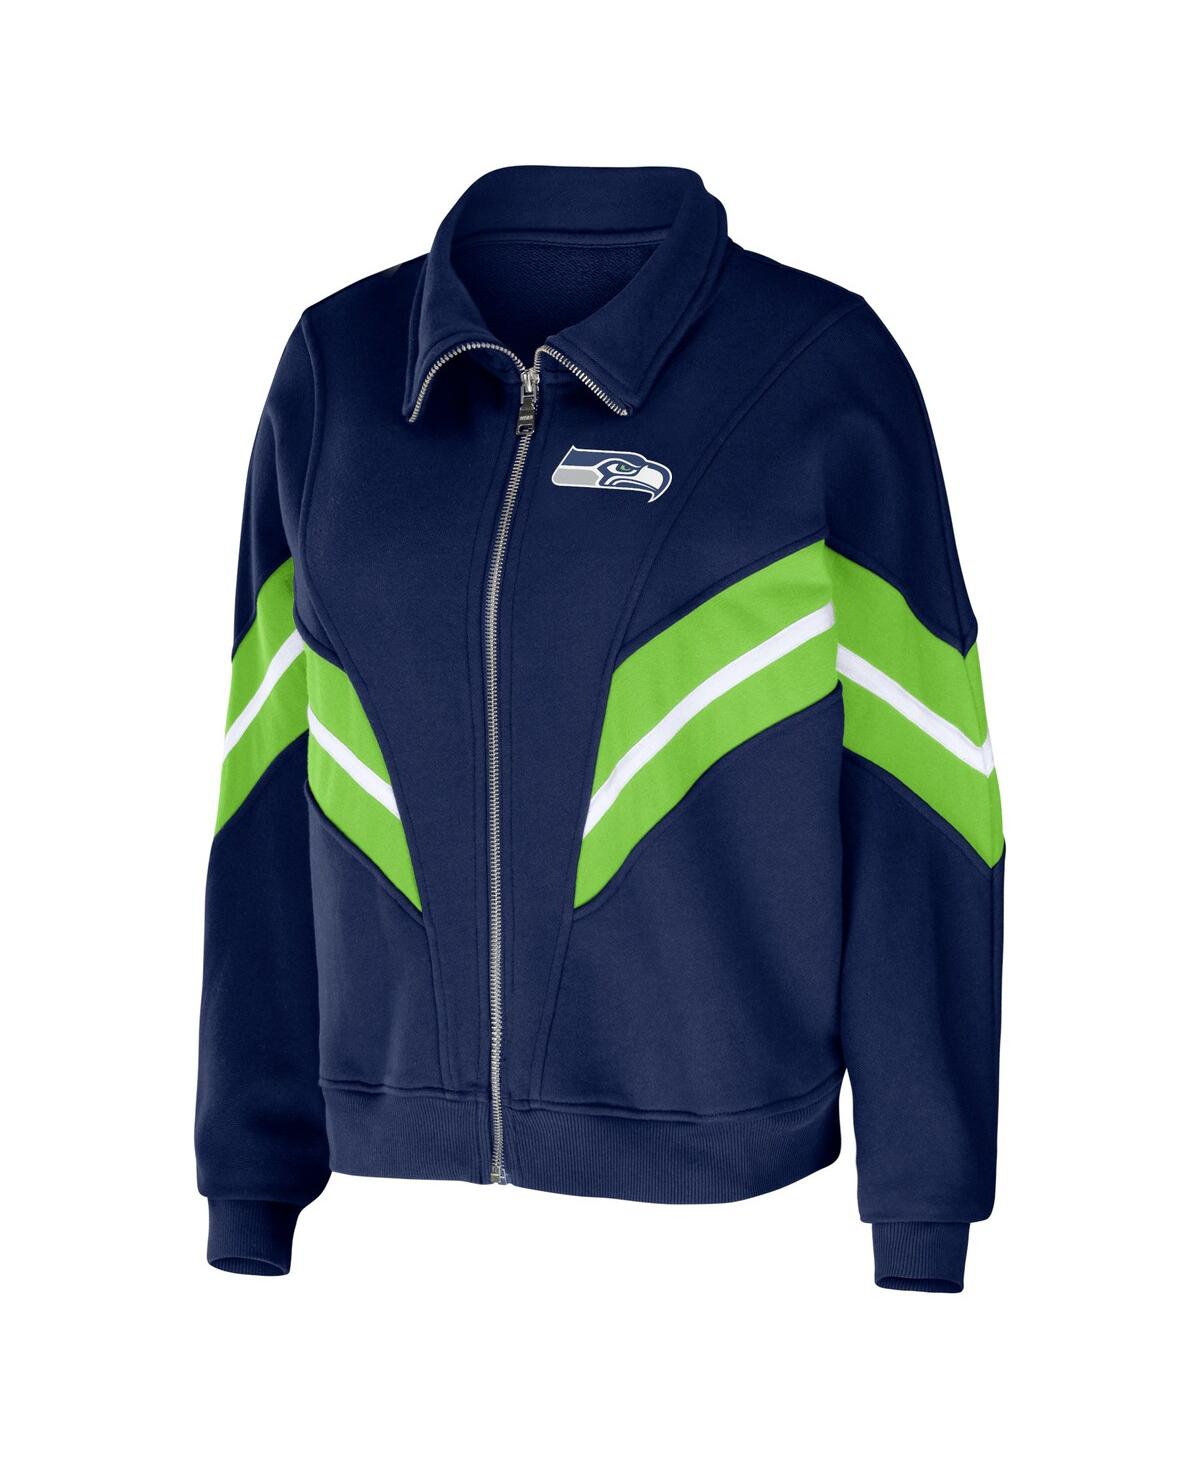 Shop Wear By Erin Andrews Women's  College Navy Seattle Seahawks Plus Size Yarn Dye Stripe Full-zip Jacket